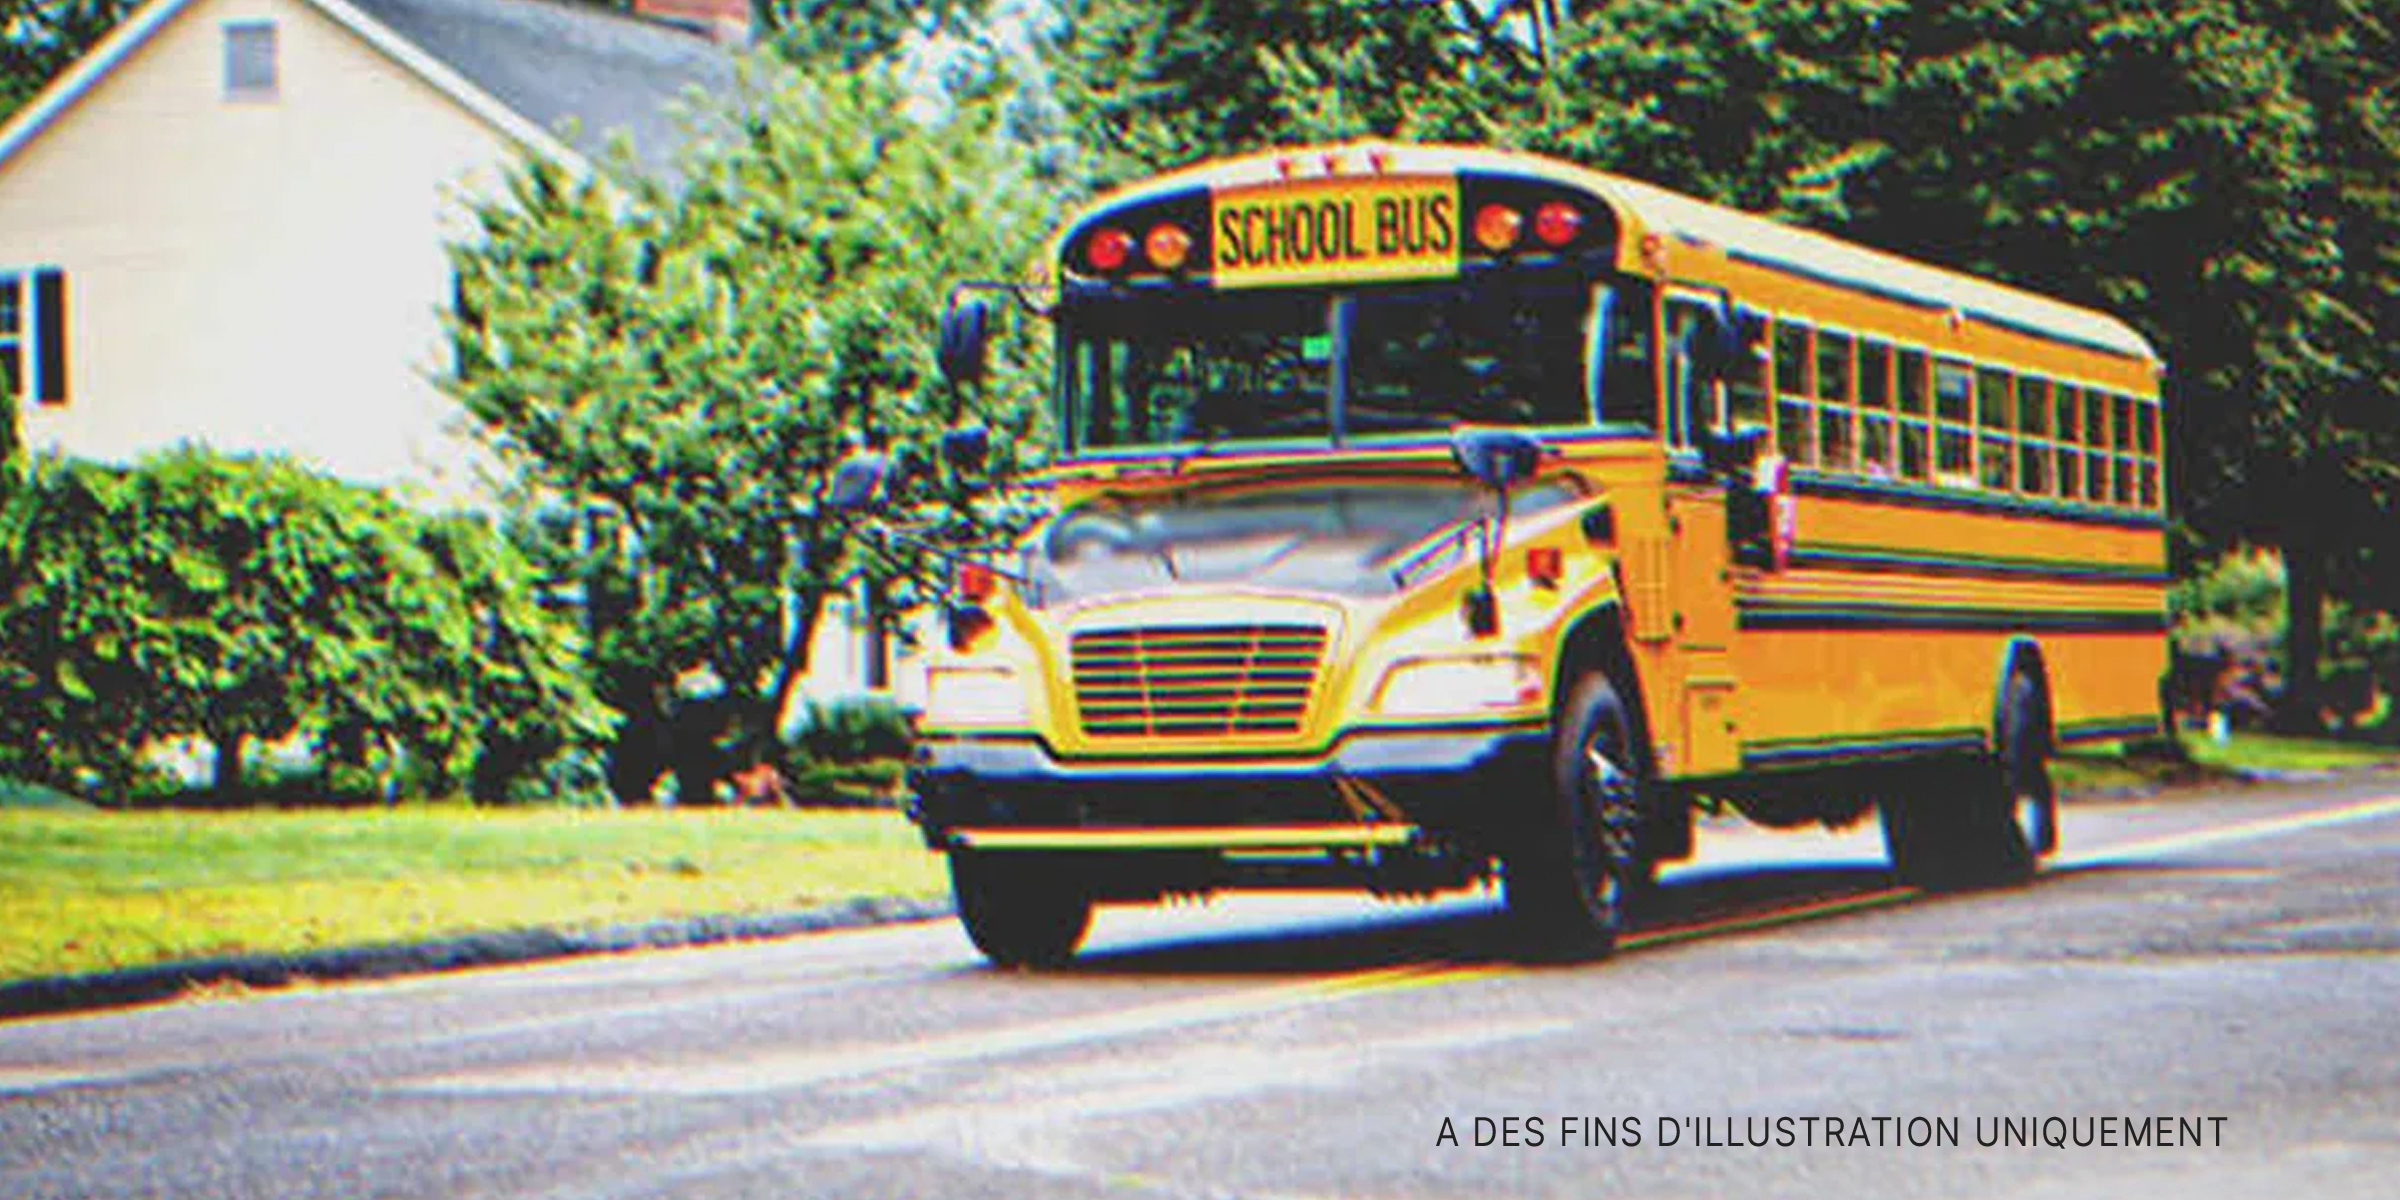 Un bus scolaire | Source : Shutterstock